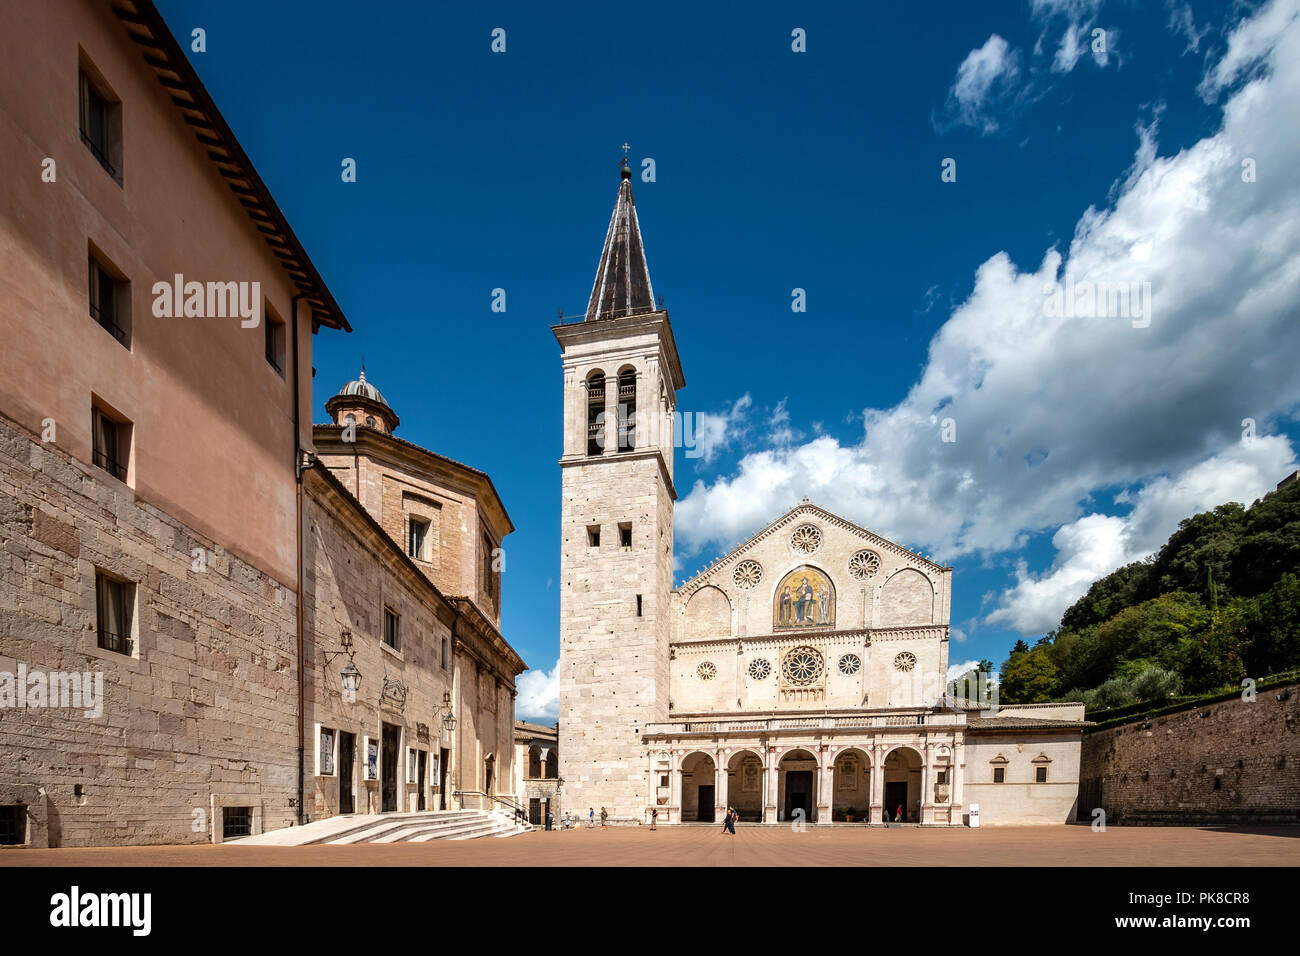 La Cathédrale de Spolète, Ombrie, Italie Banque D'Images